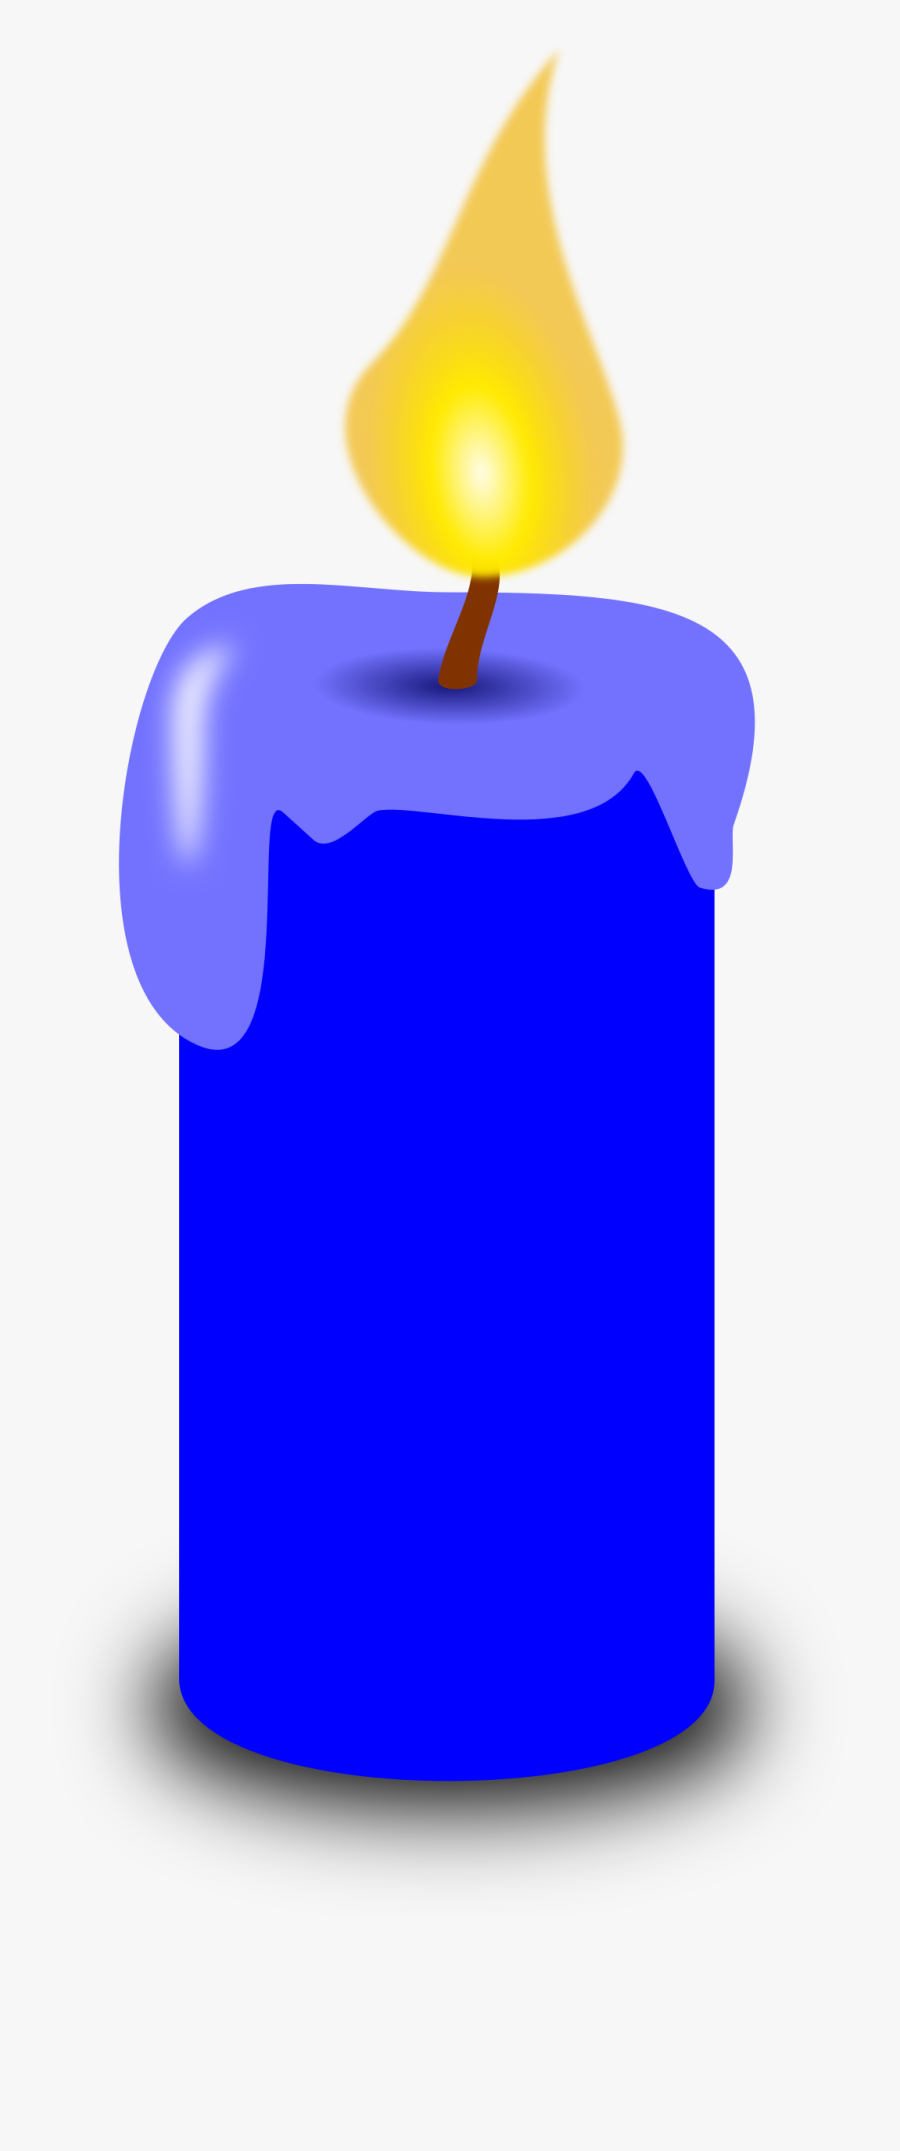 Blue Candle Clipart, Transparent Clipart